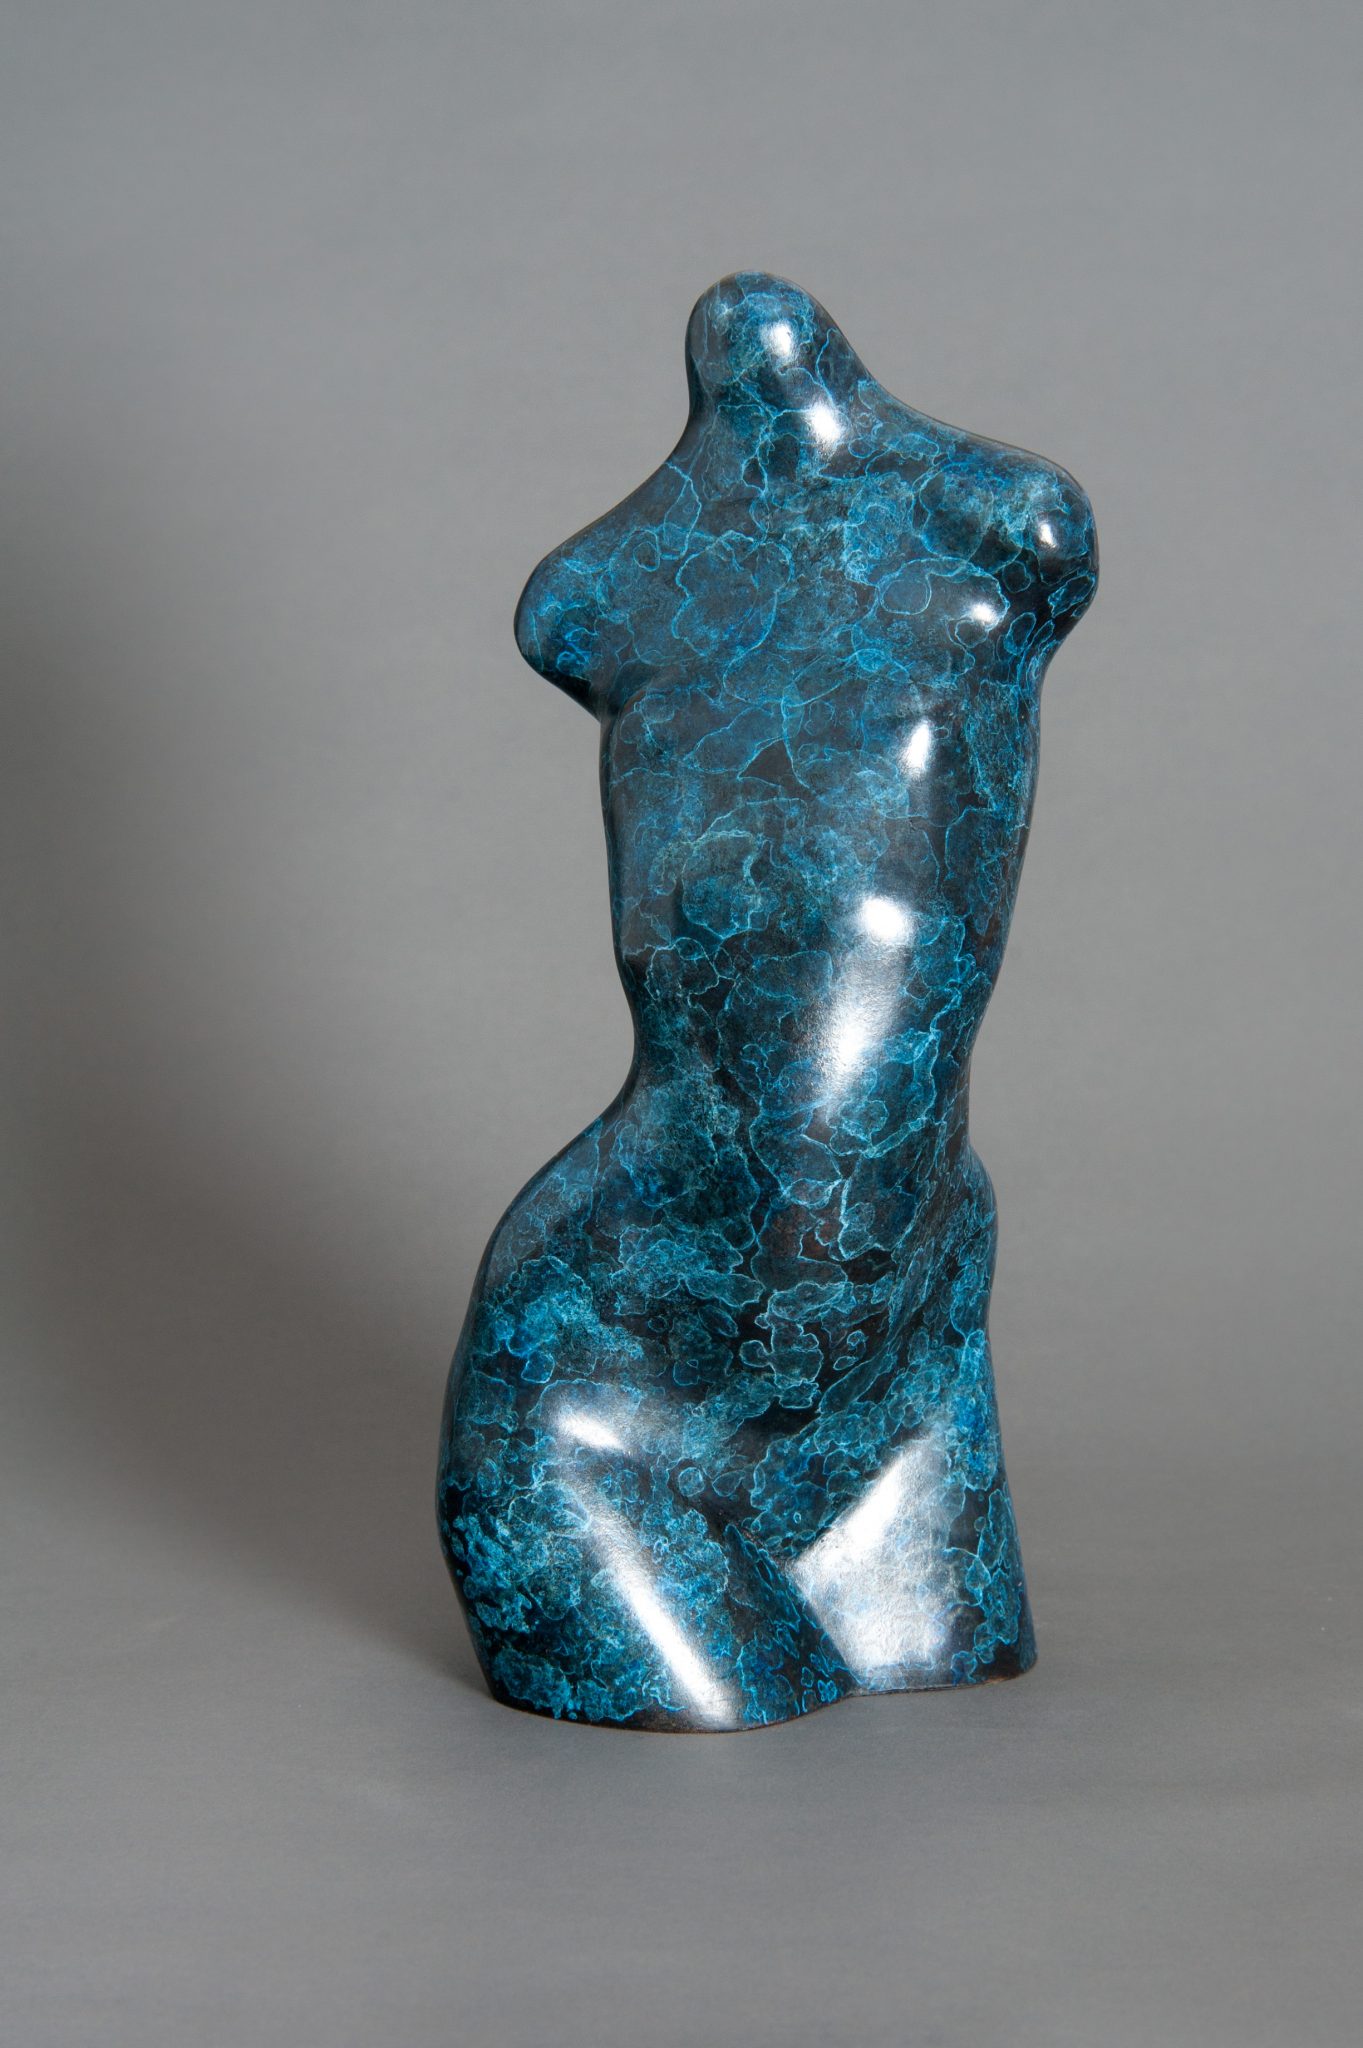 bronze art for sale surrey